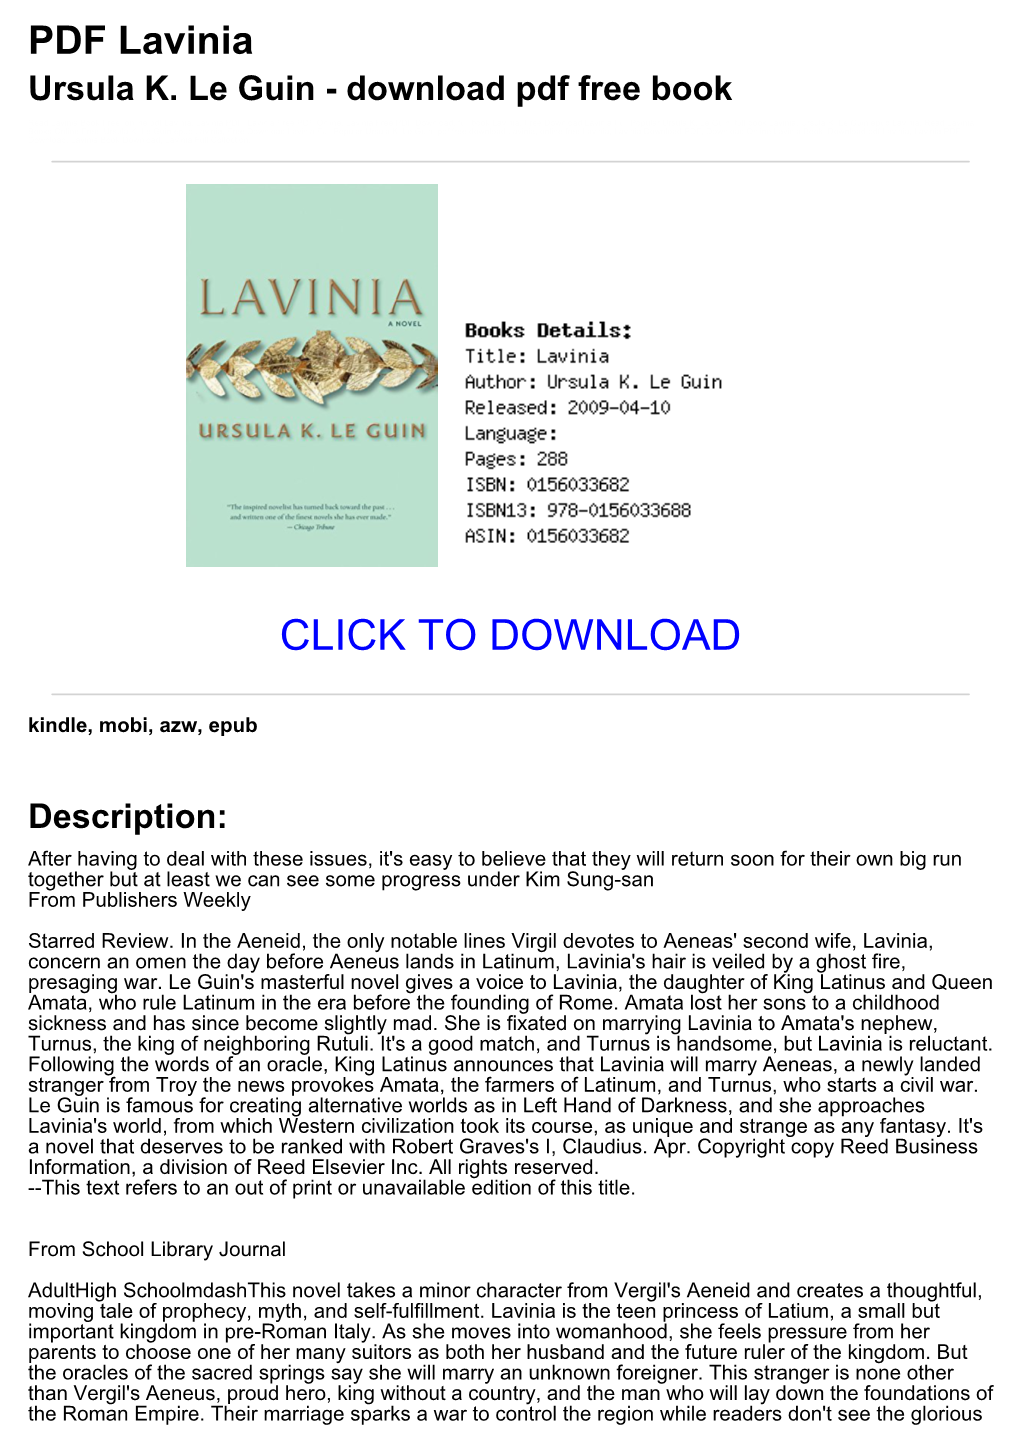 PDF Lavinia Ursula K. Le Guin - Download Pdf Free Book